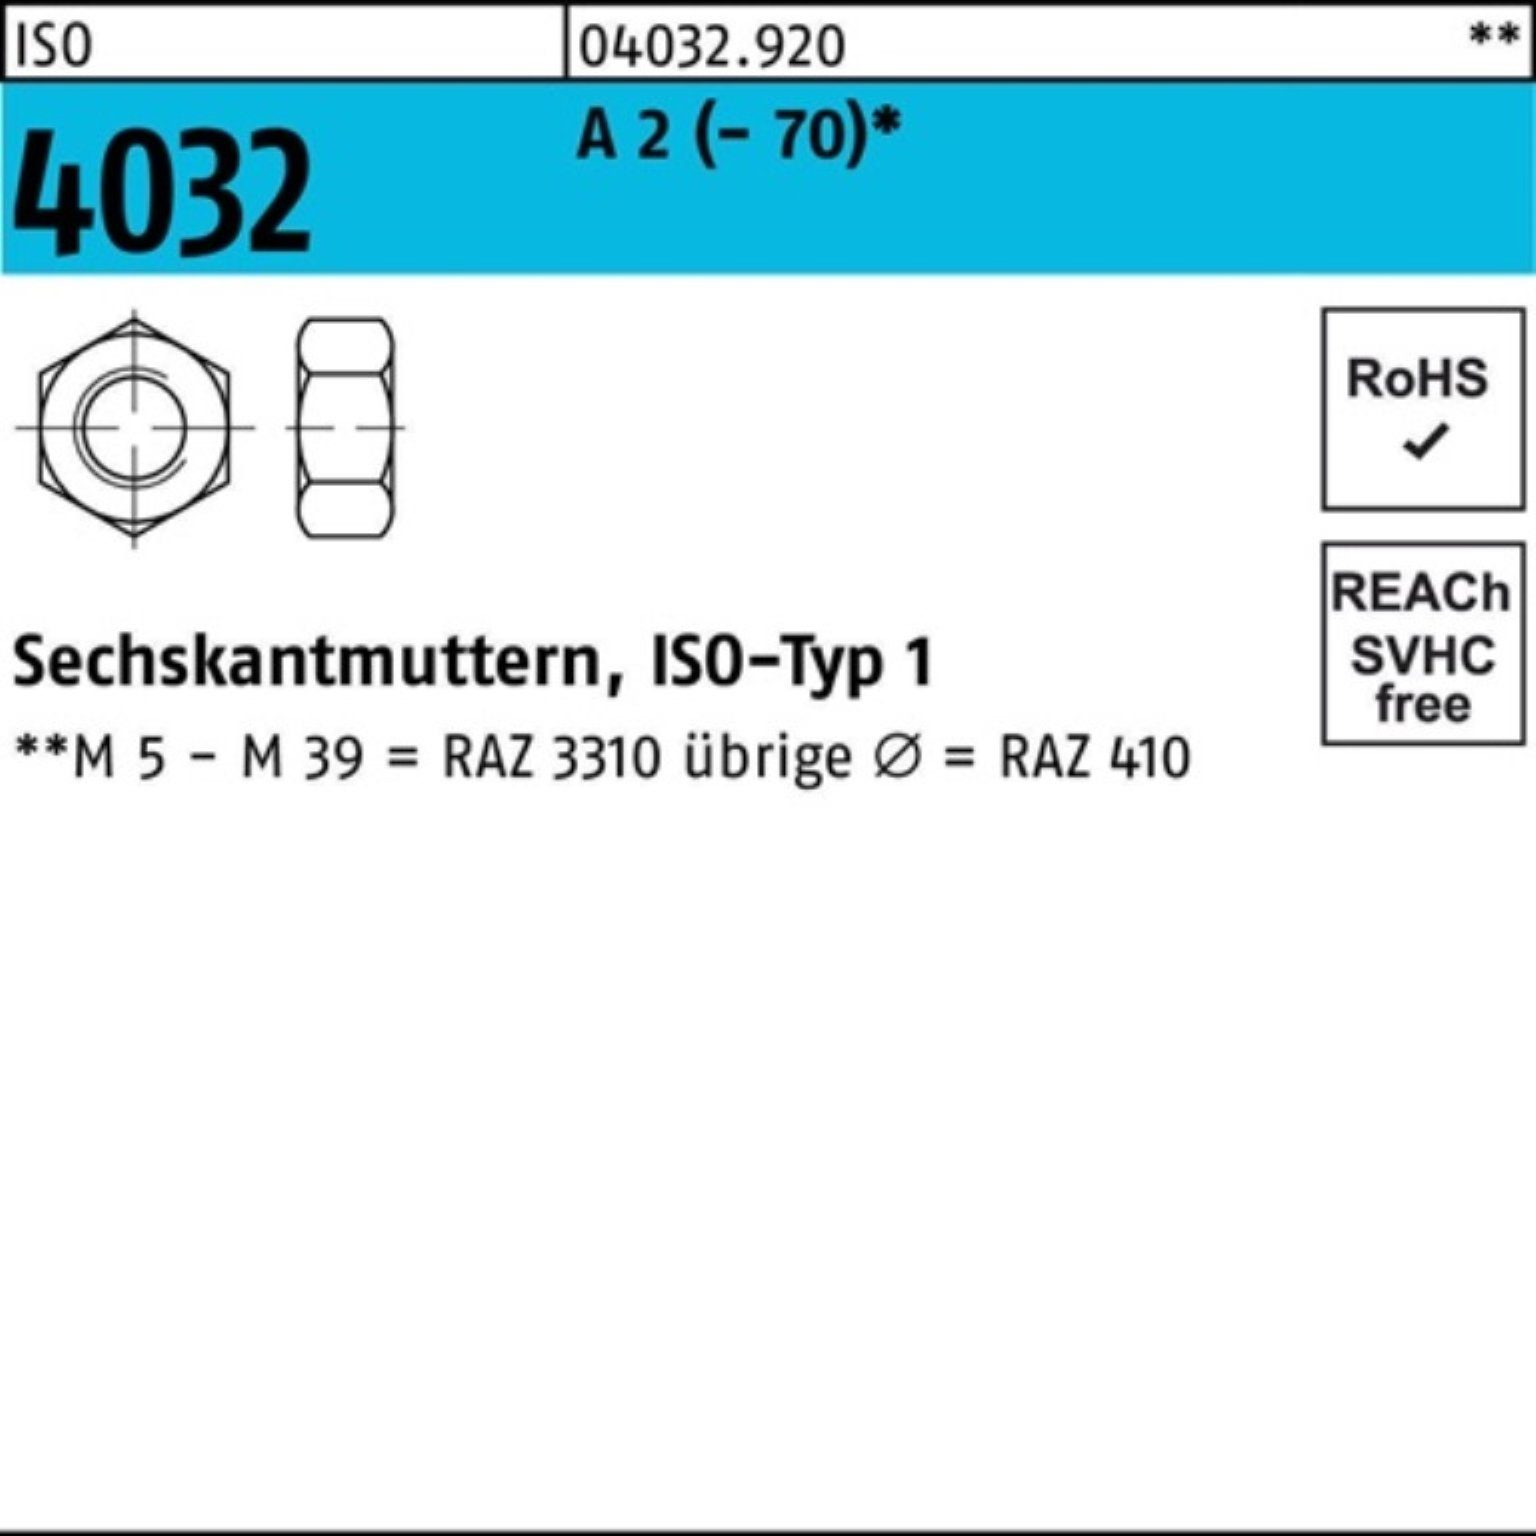 A 2 5 A ISO 100er - 70 ISO Pack 4032 4032 M36 2 Sechskantmutter Stück Bufab Muttern